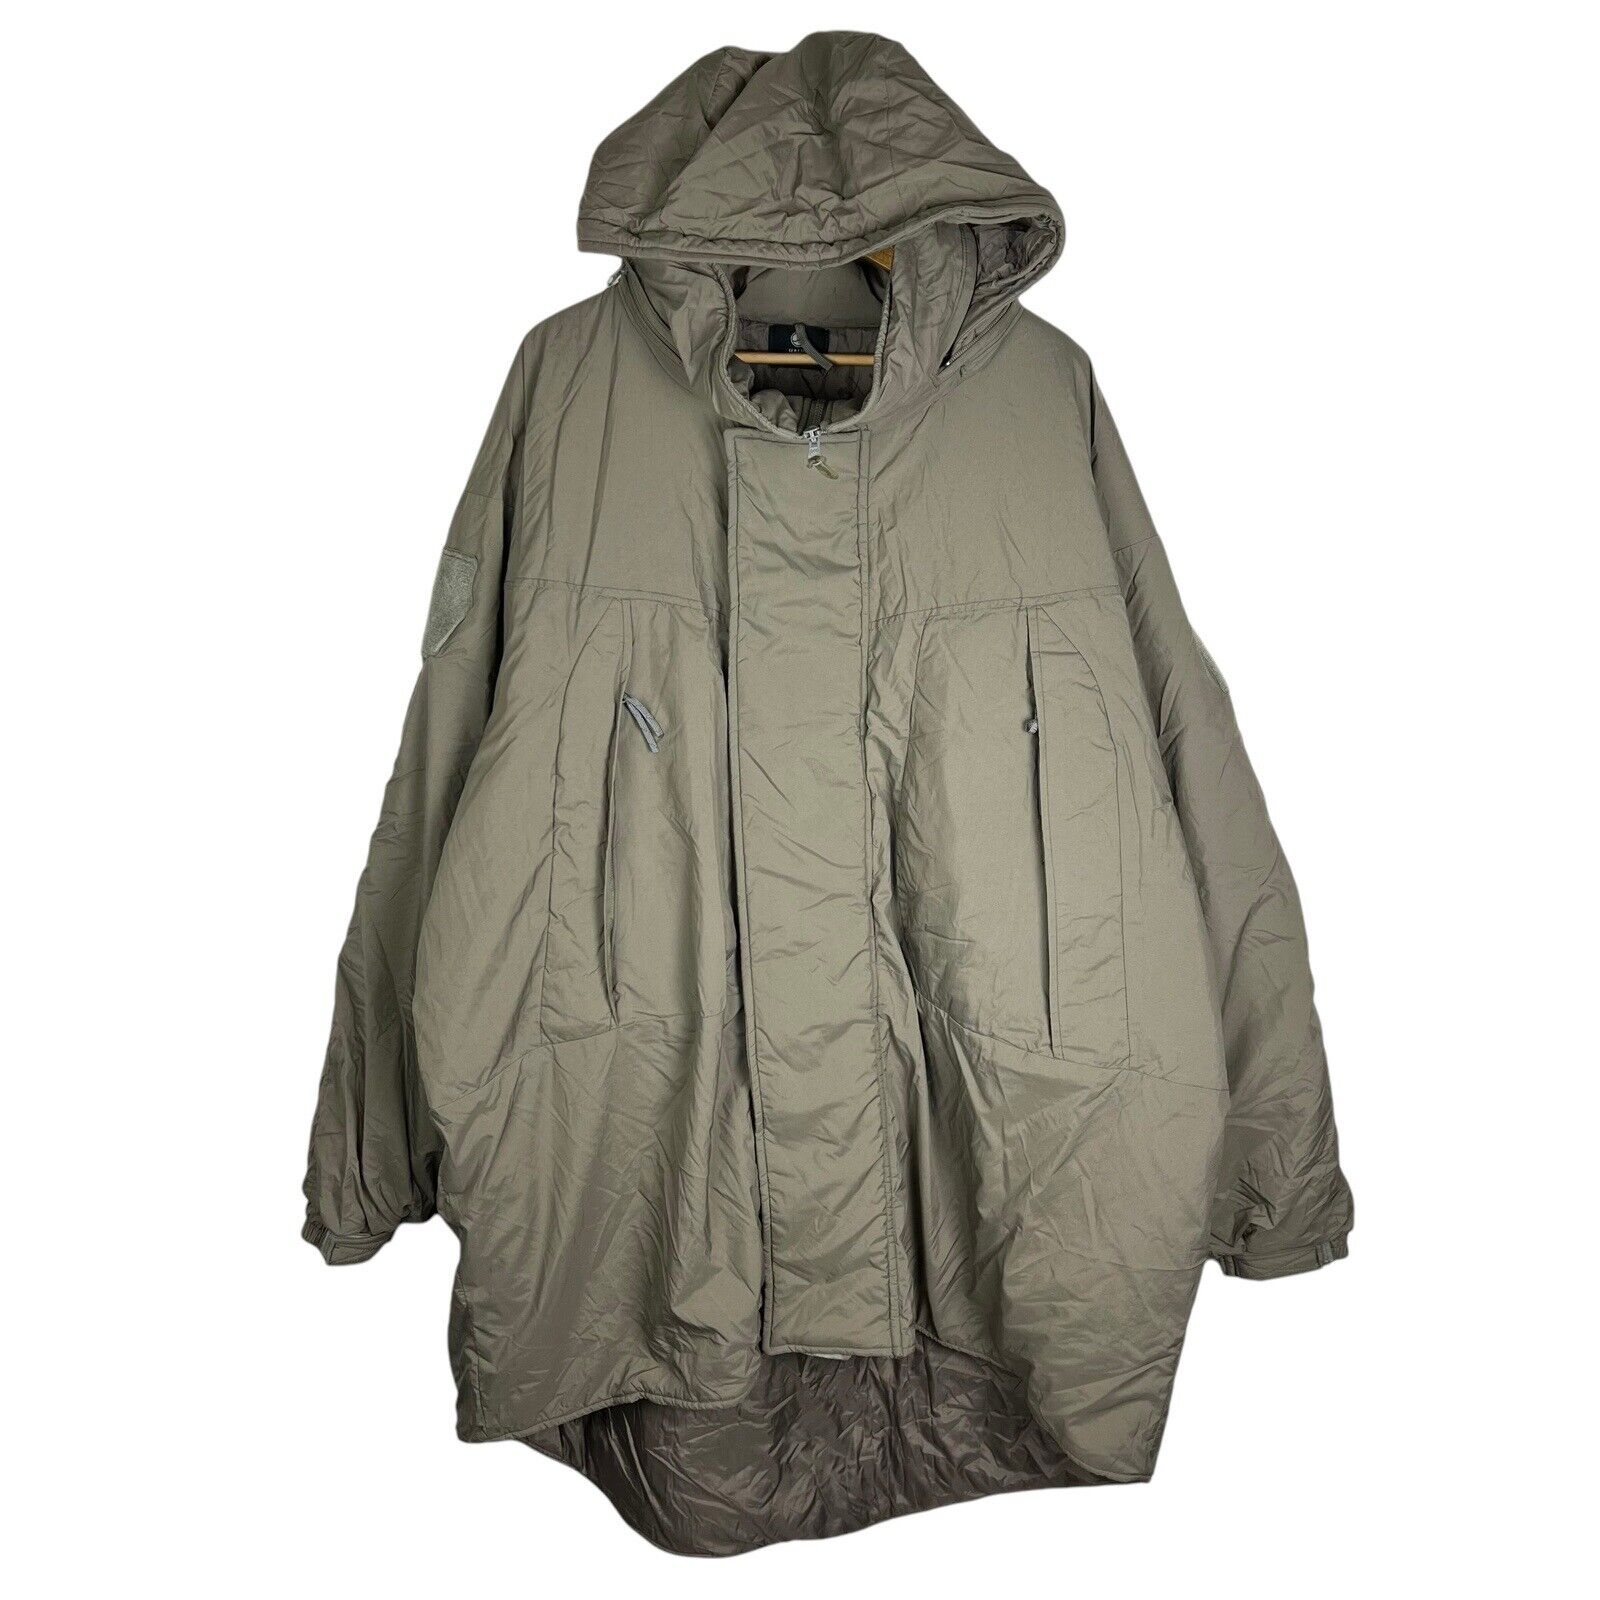 Halys Sekri PCU Level 7 Jacket Type 2 Extreme Cold Weather Parka Size Large USA